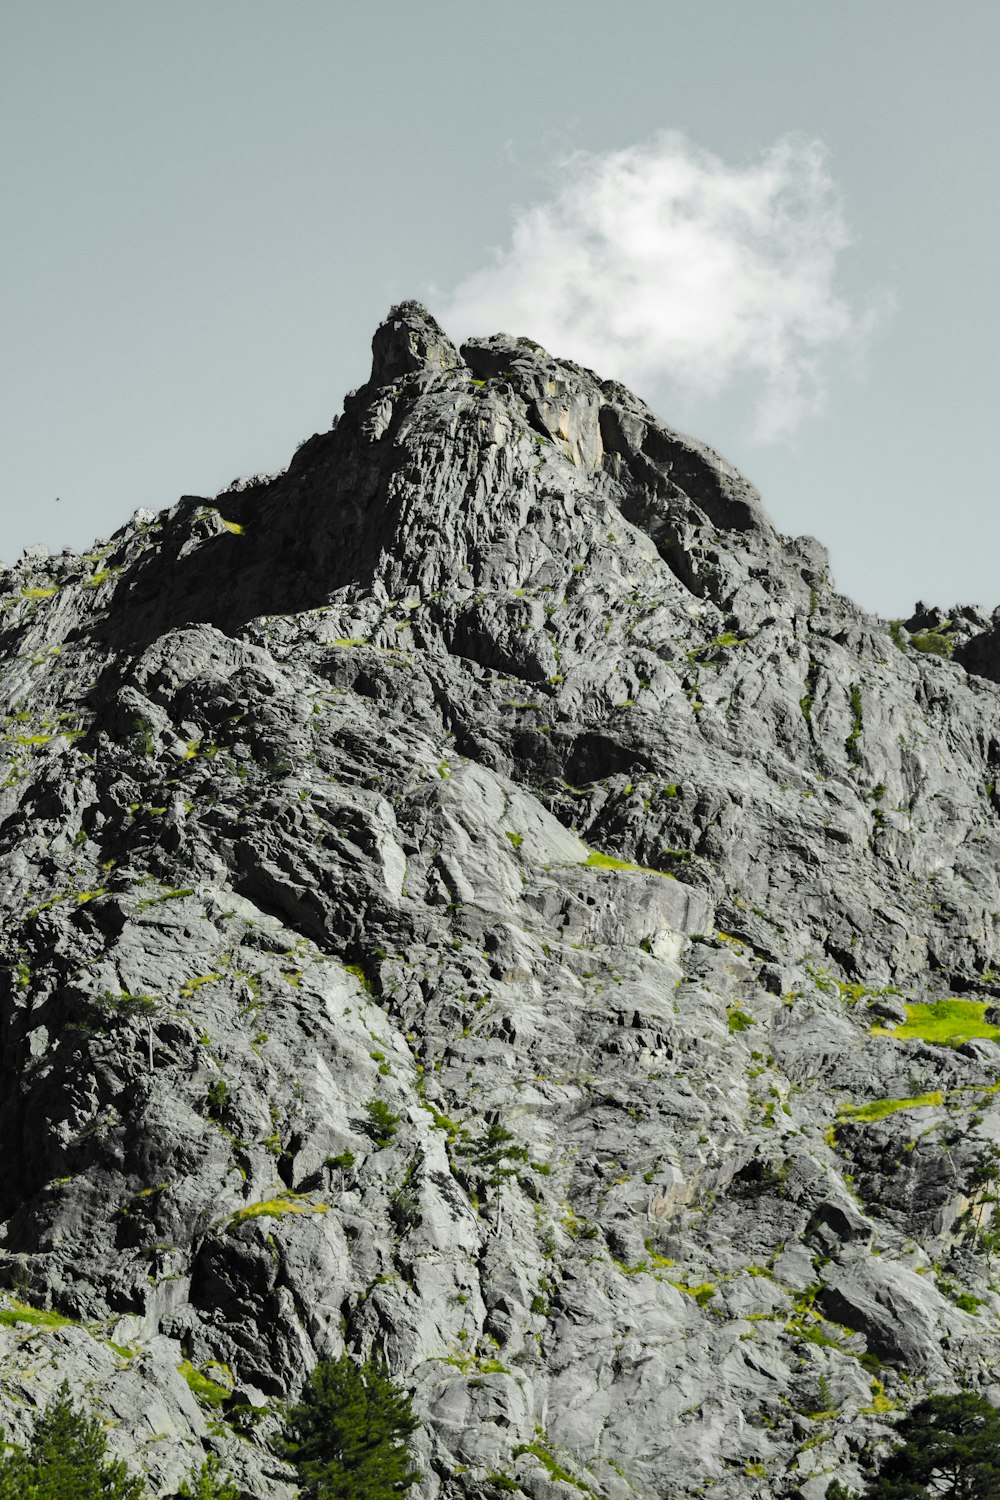 montagna rocciosa grigia sotto il cielo blu durante il giorno